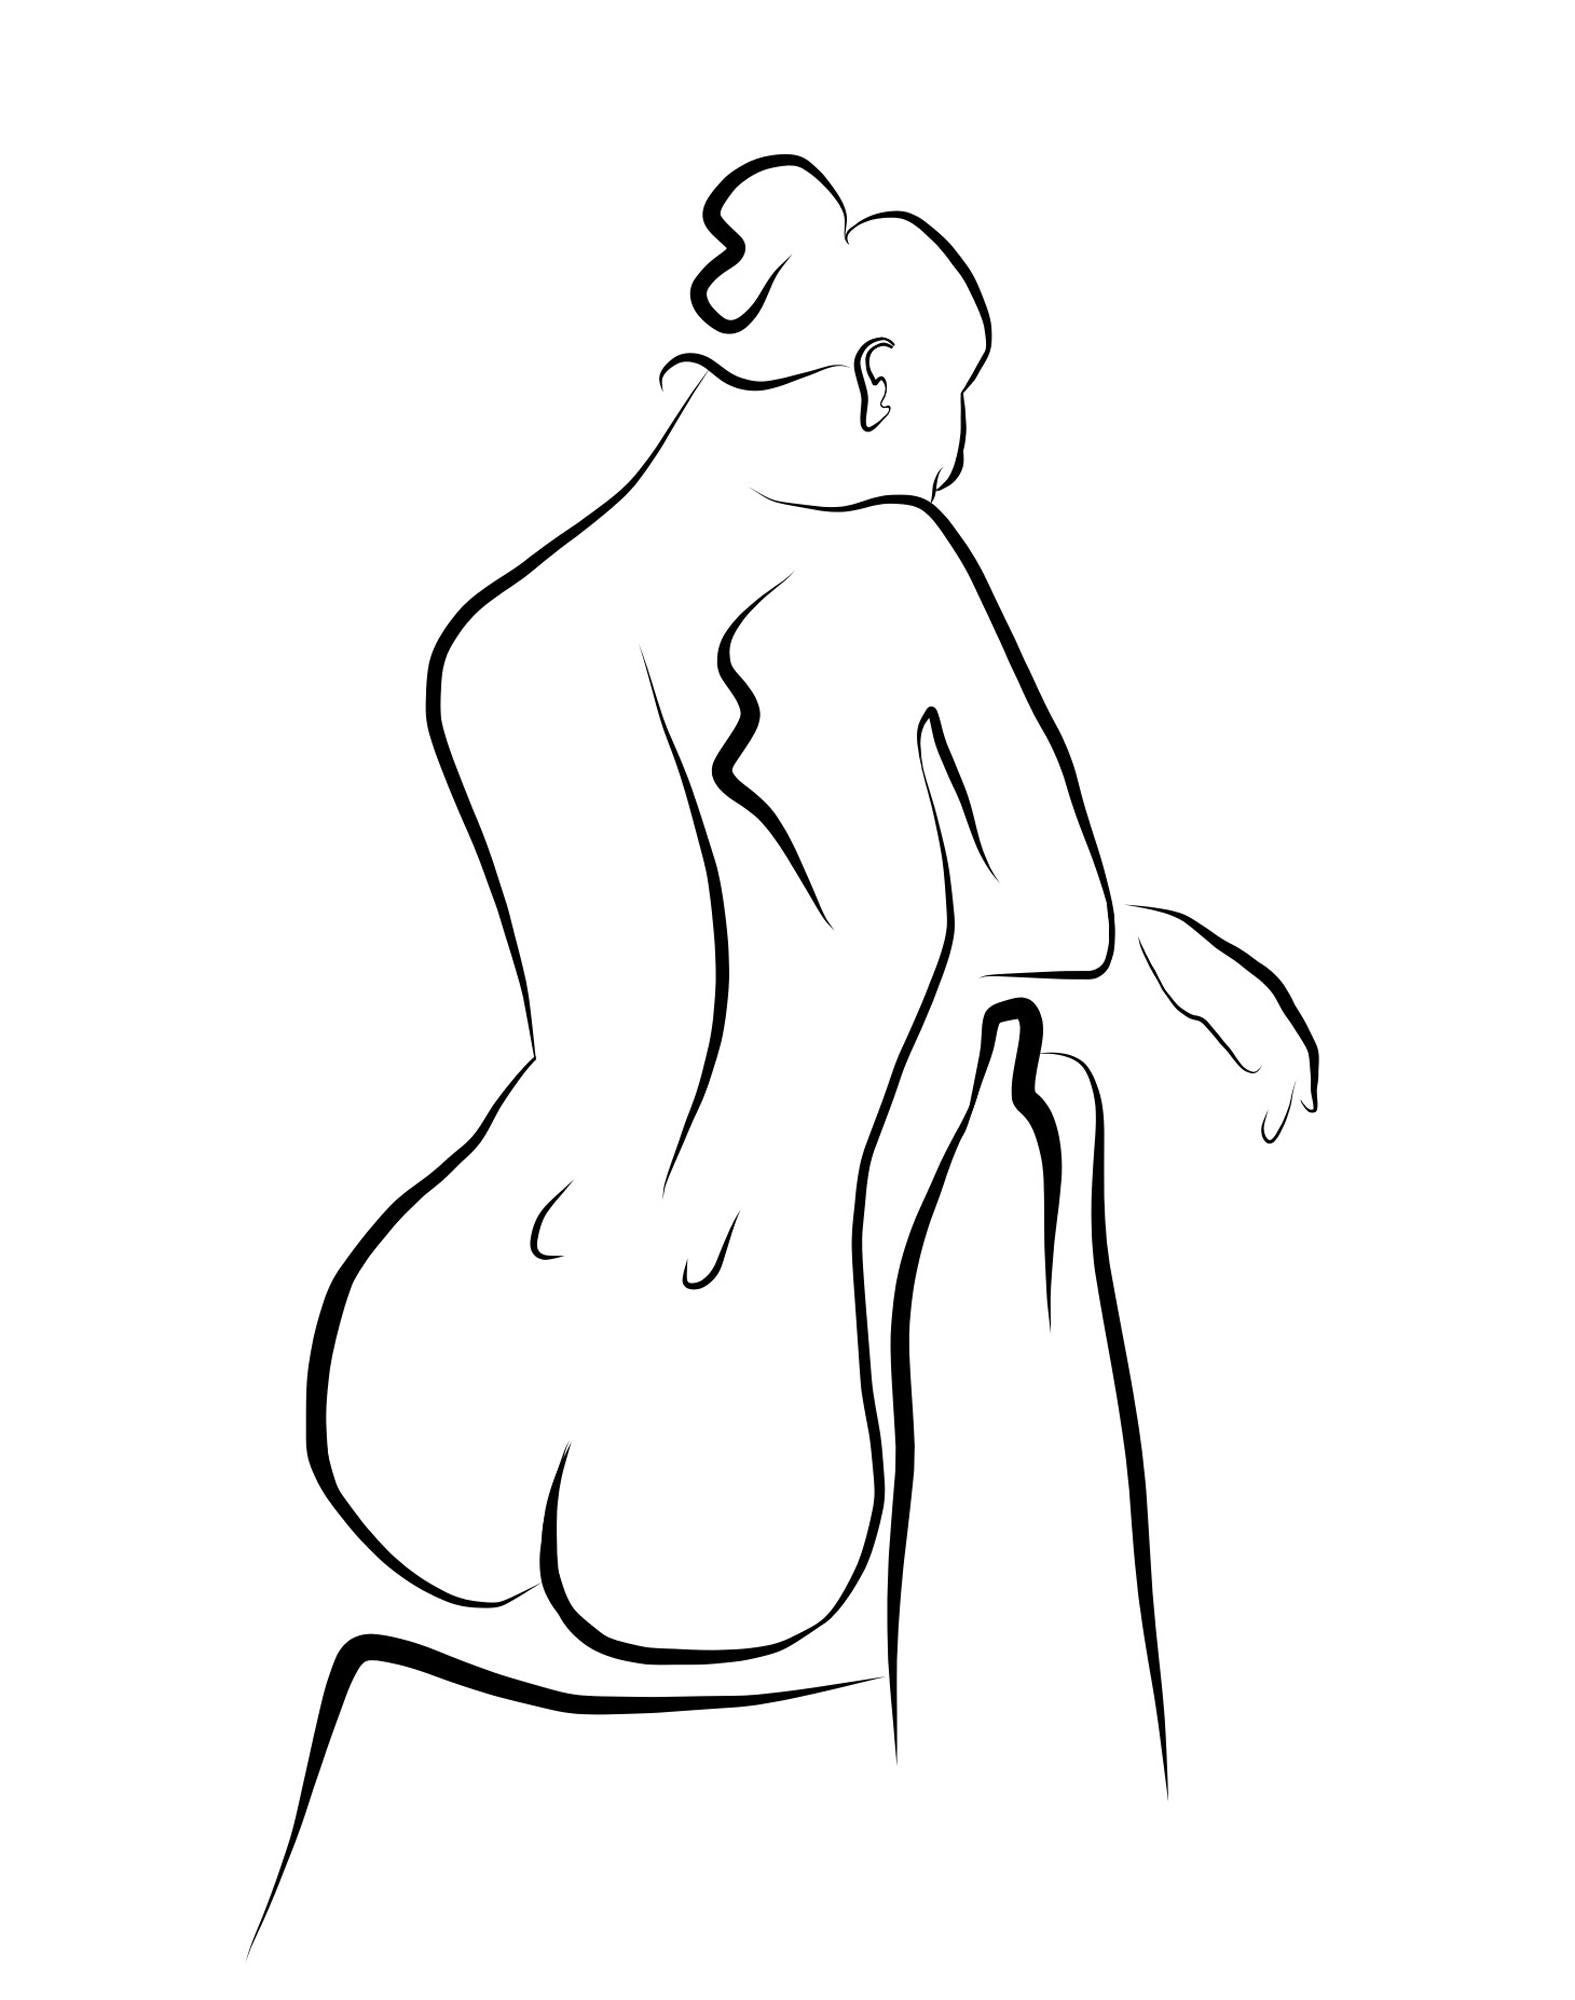 Michael Binkley Nude Print - Haiku #57, 1/50 - Digital Vector Drawing Seated Female Nude From Rear